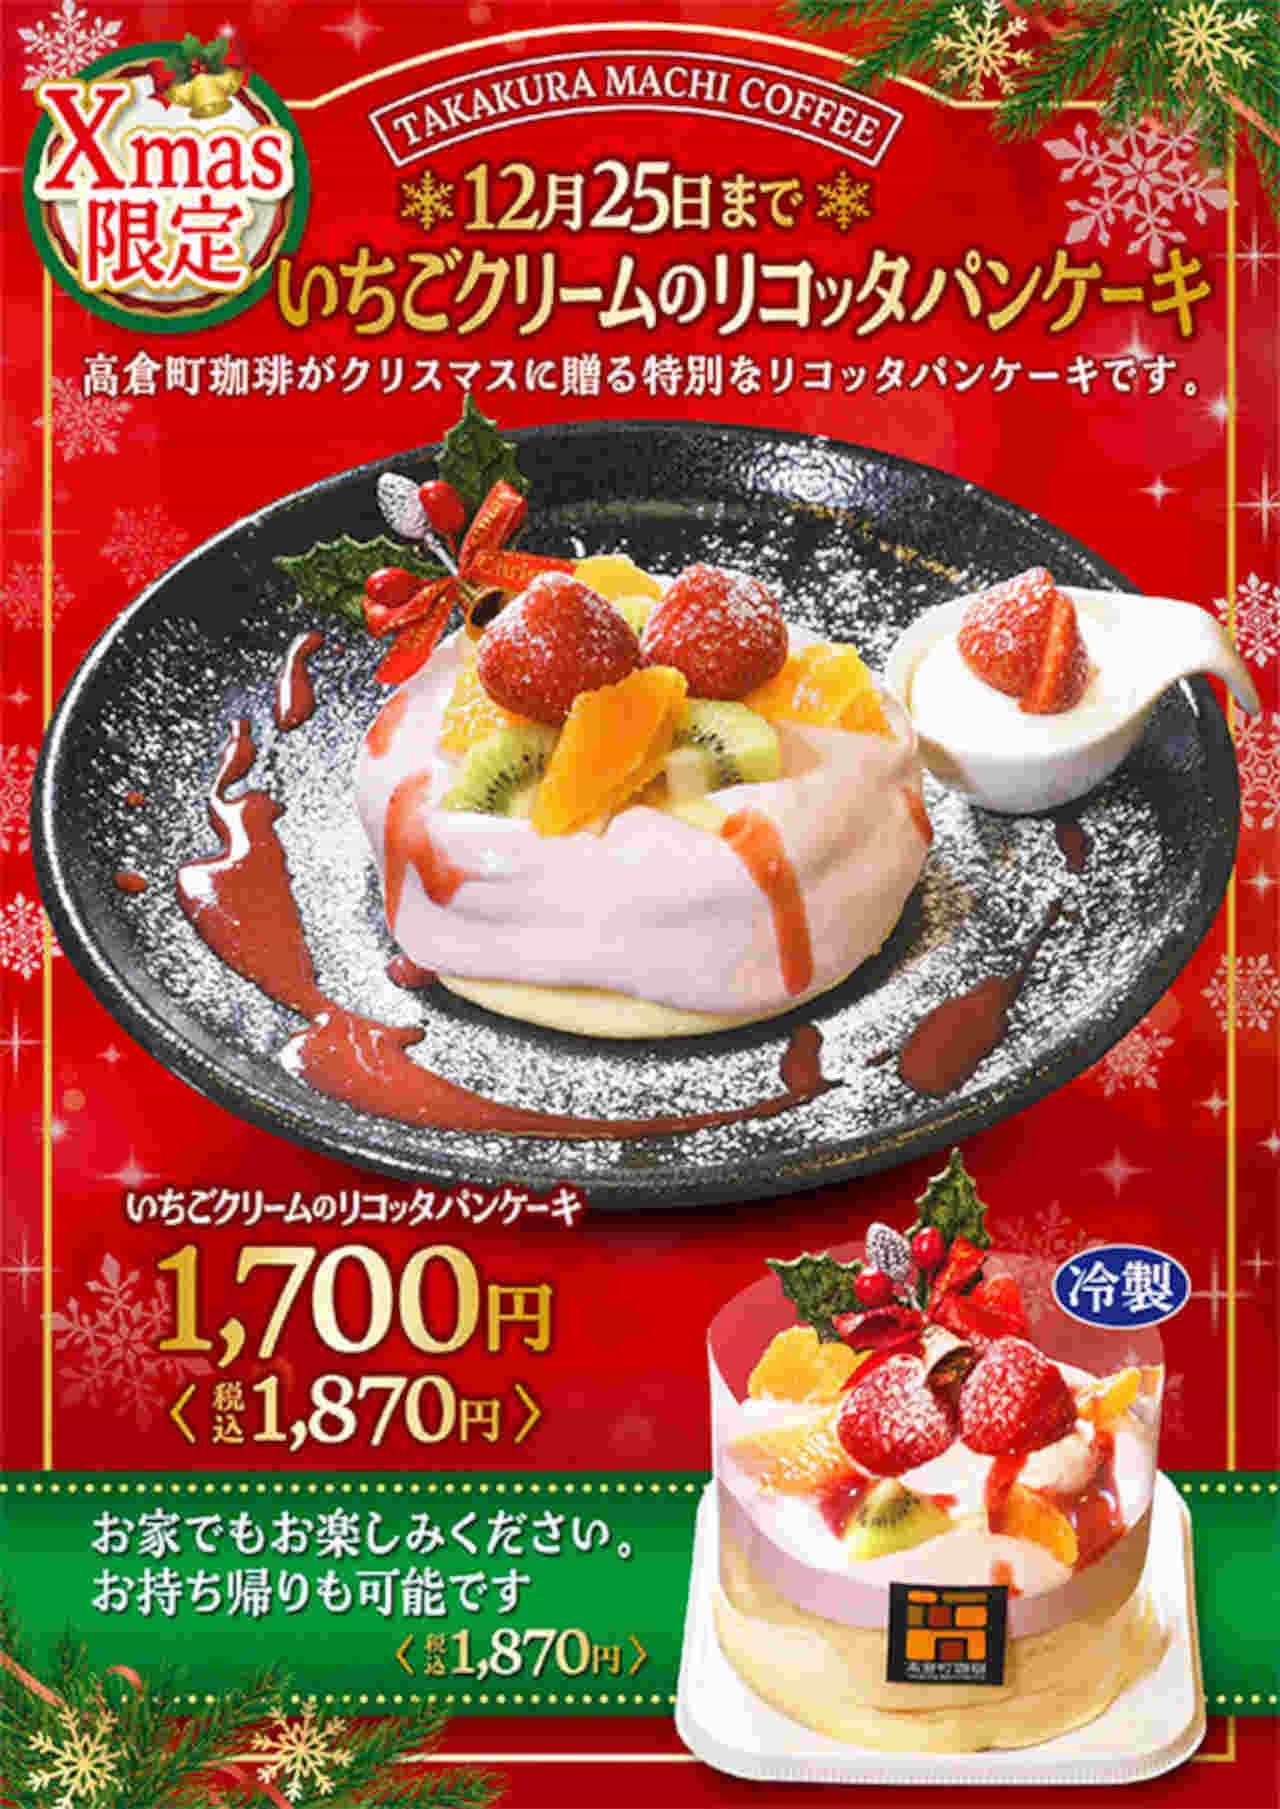 Takakuracho Coffee "Strawberry Cream Ricotta Pancakes